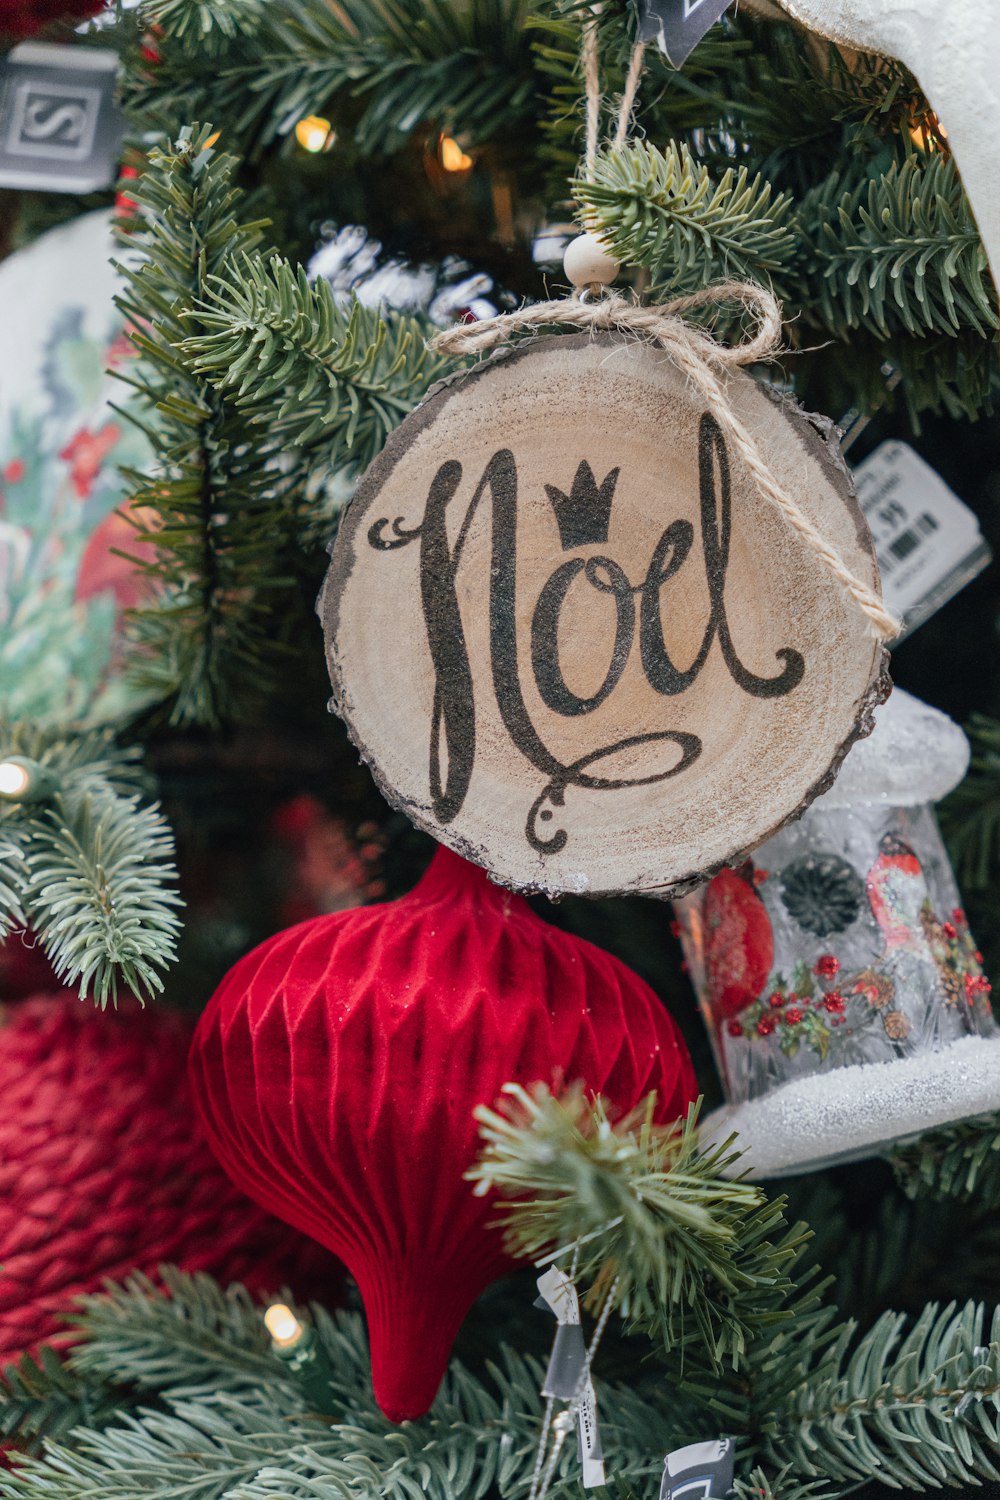 Nahaufnahme eines Weihnachtsbaums mit Ornamenten